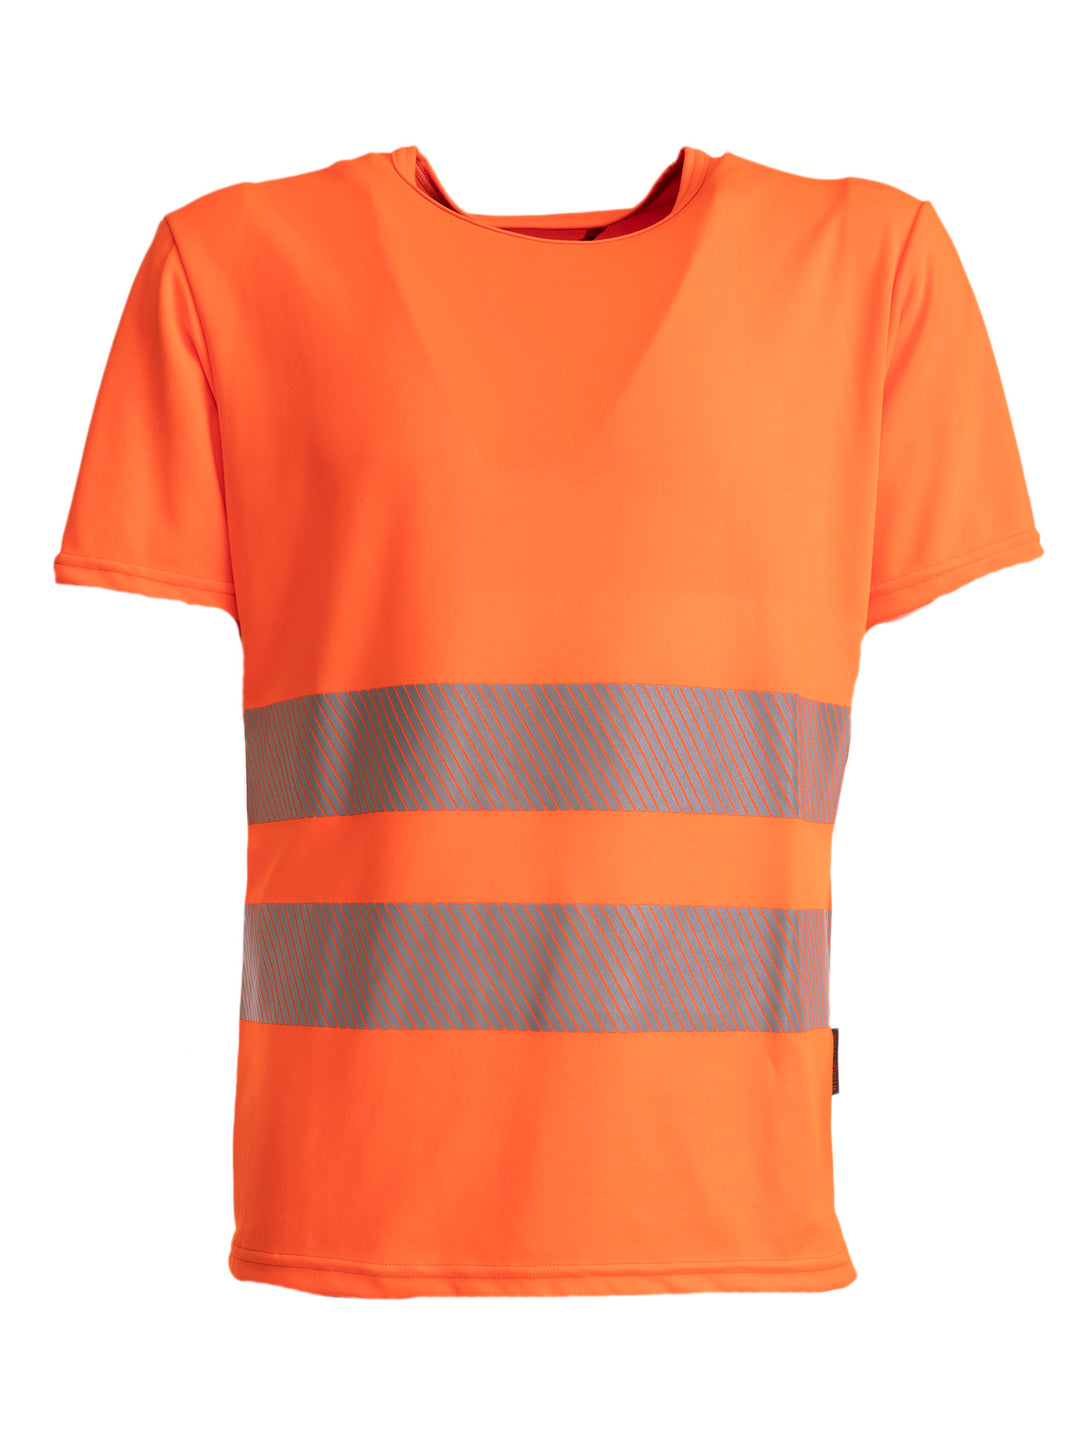 Oranssi lyhythihainen varoitus t-paita, jossa heijastimet edessä. Pyöreä pääntie. 